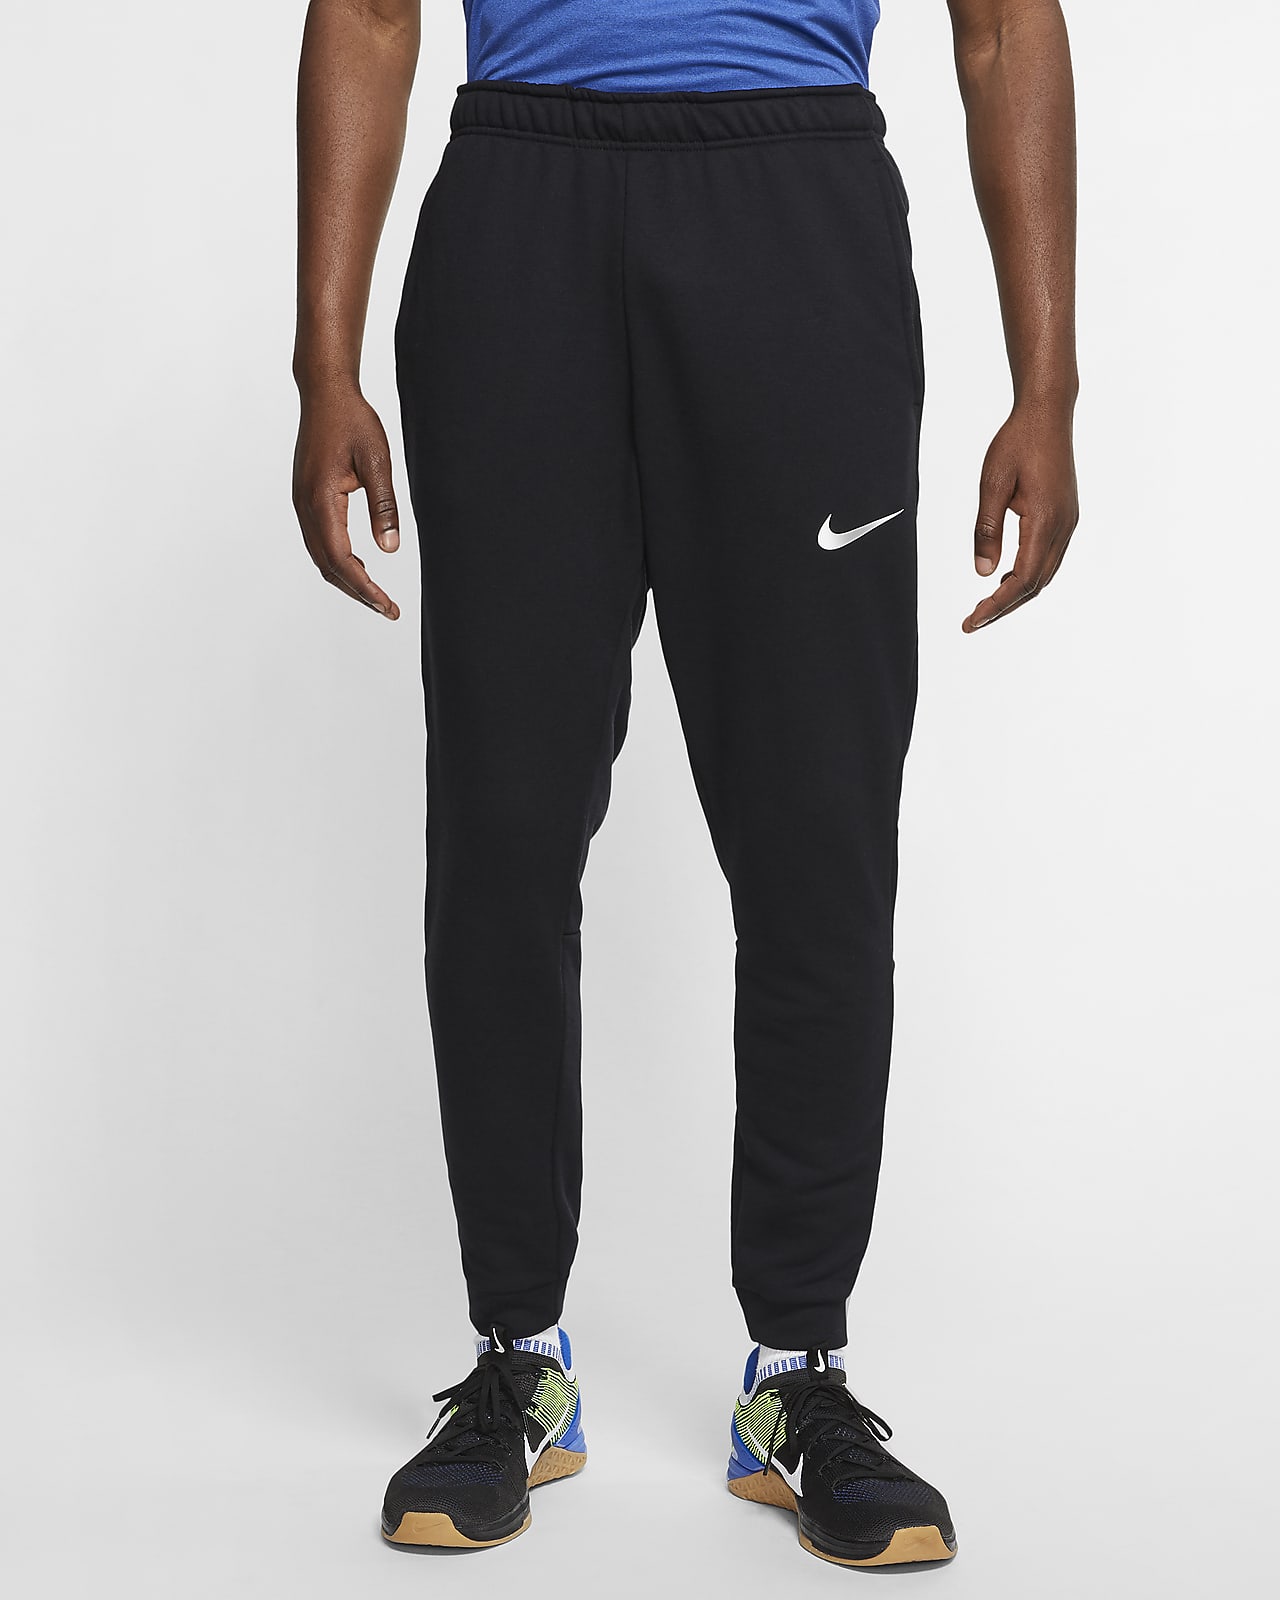 Nike Dri-FIT Men's Fleece Training Trousers